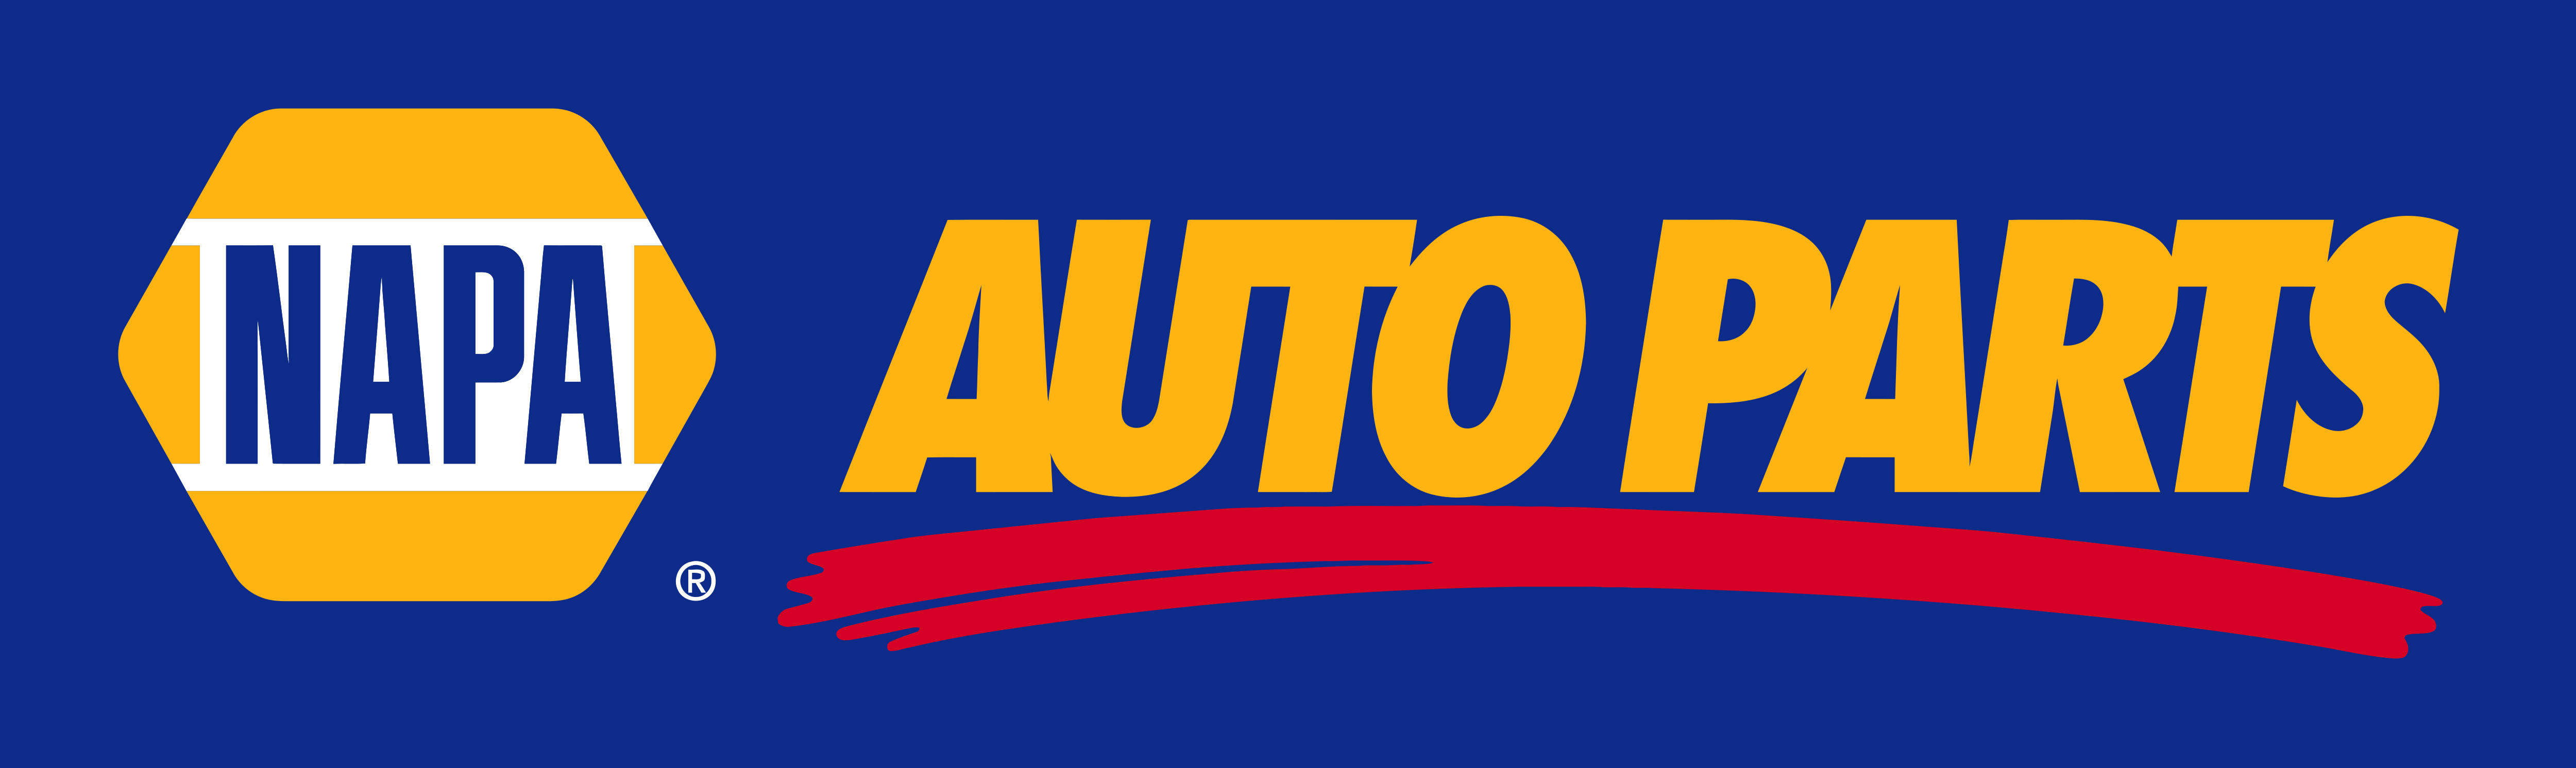 Napa Auto Parts – Logos Download